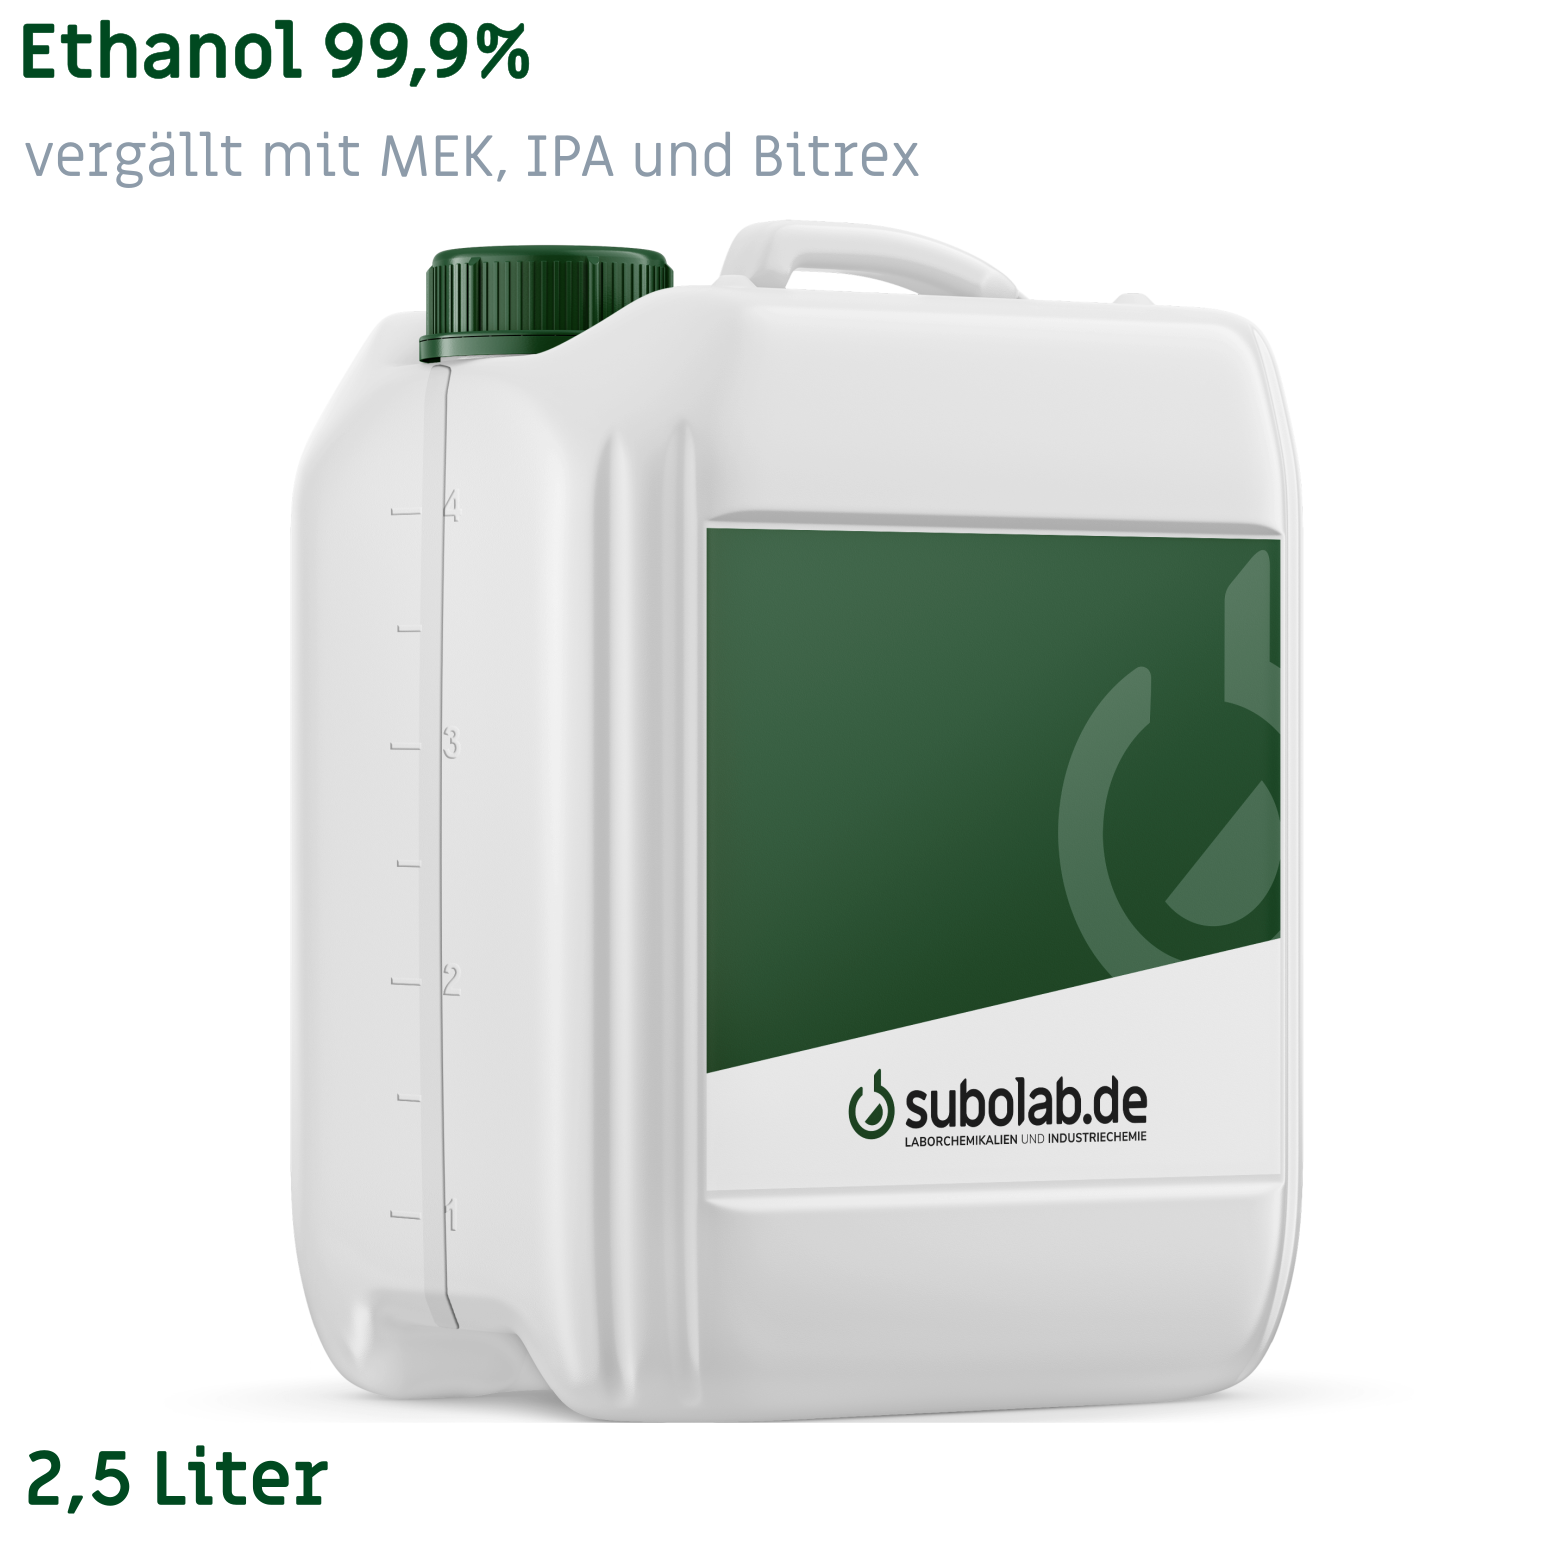 Bild von Ethanol 99,9% vergällt mit MEK, IPA und Bitrex (2,5 Liter)